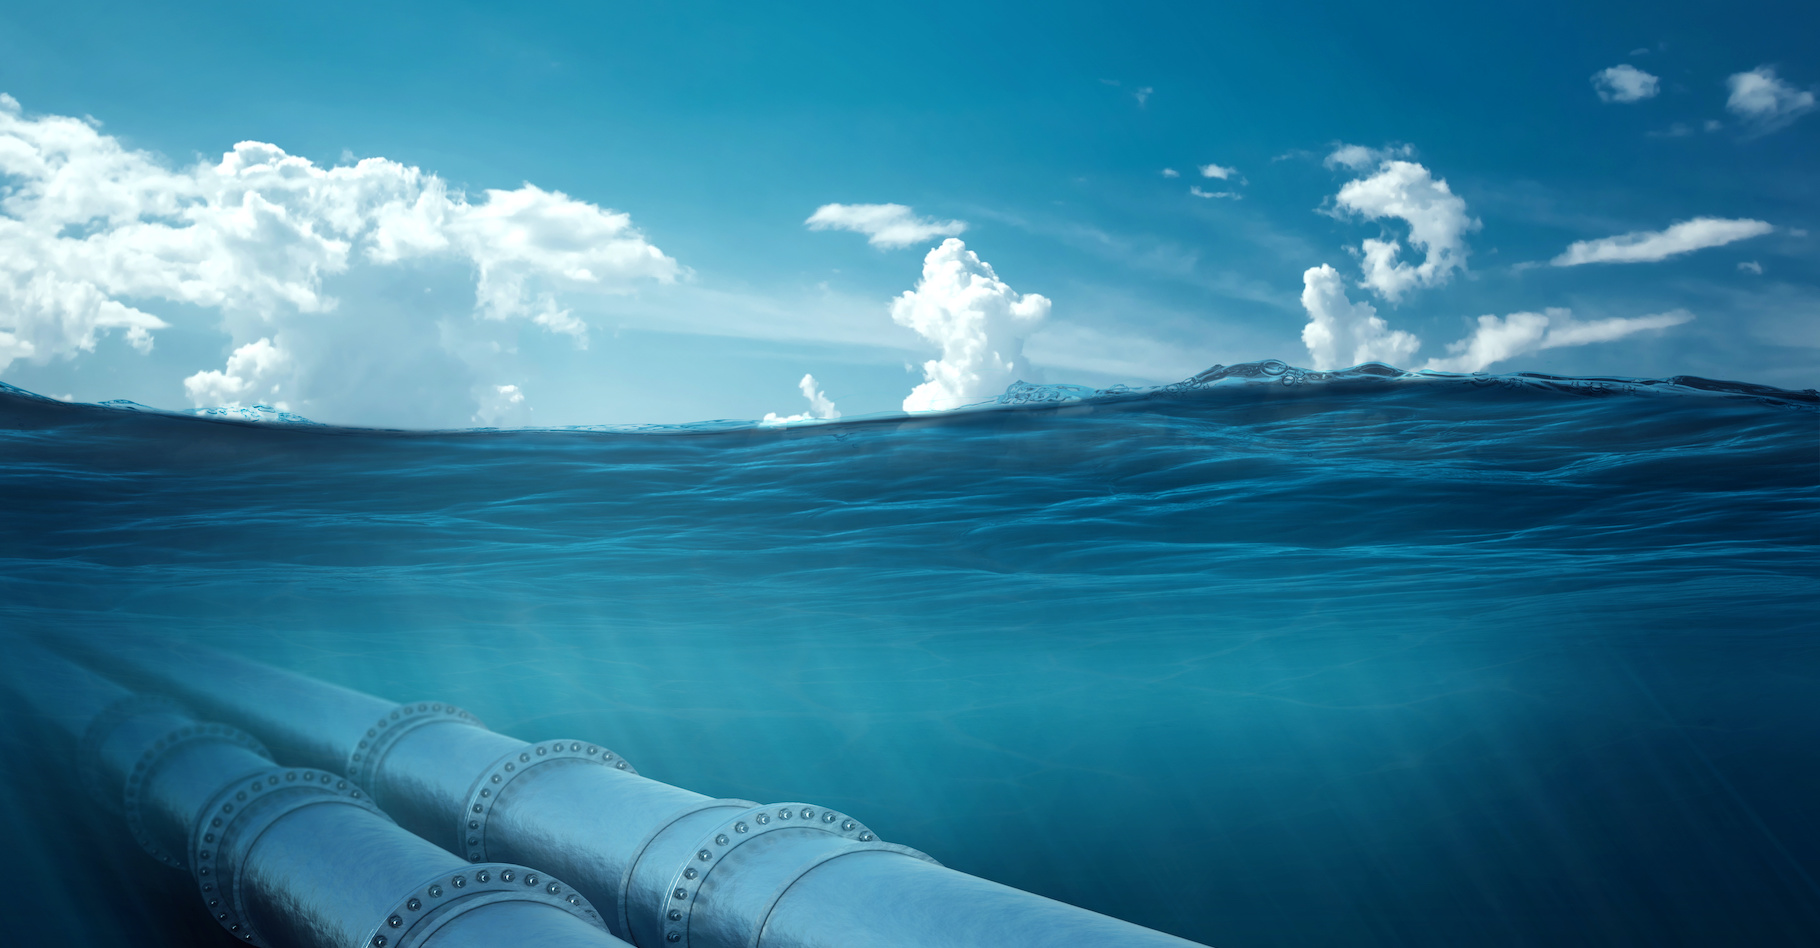 Des fuites ont été détectées sur les deux gazoducs qui relient la Russie à l’Allemagne, Nord Stream 1 et 2. Du gaz fossile s’échappe dans la mer Baltique. © Aliaksandr Marko, Adobe Stock